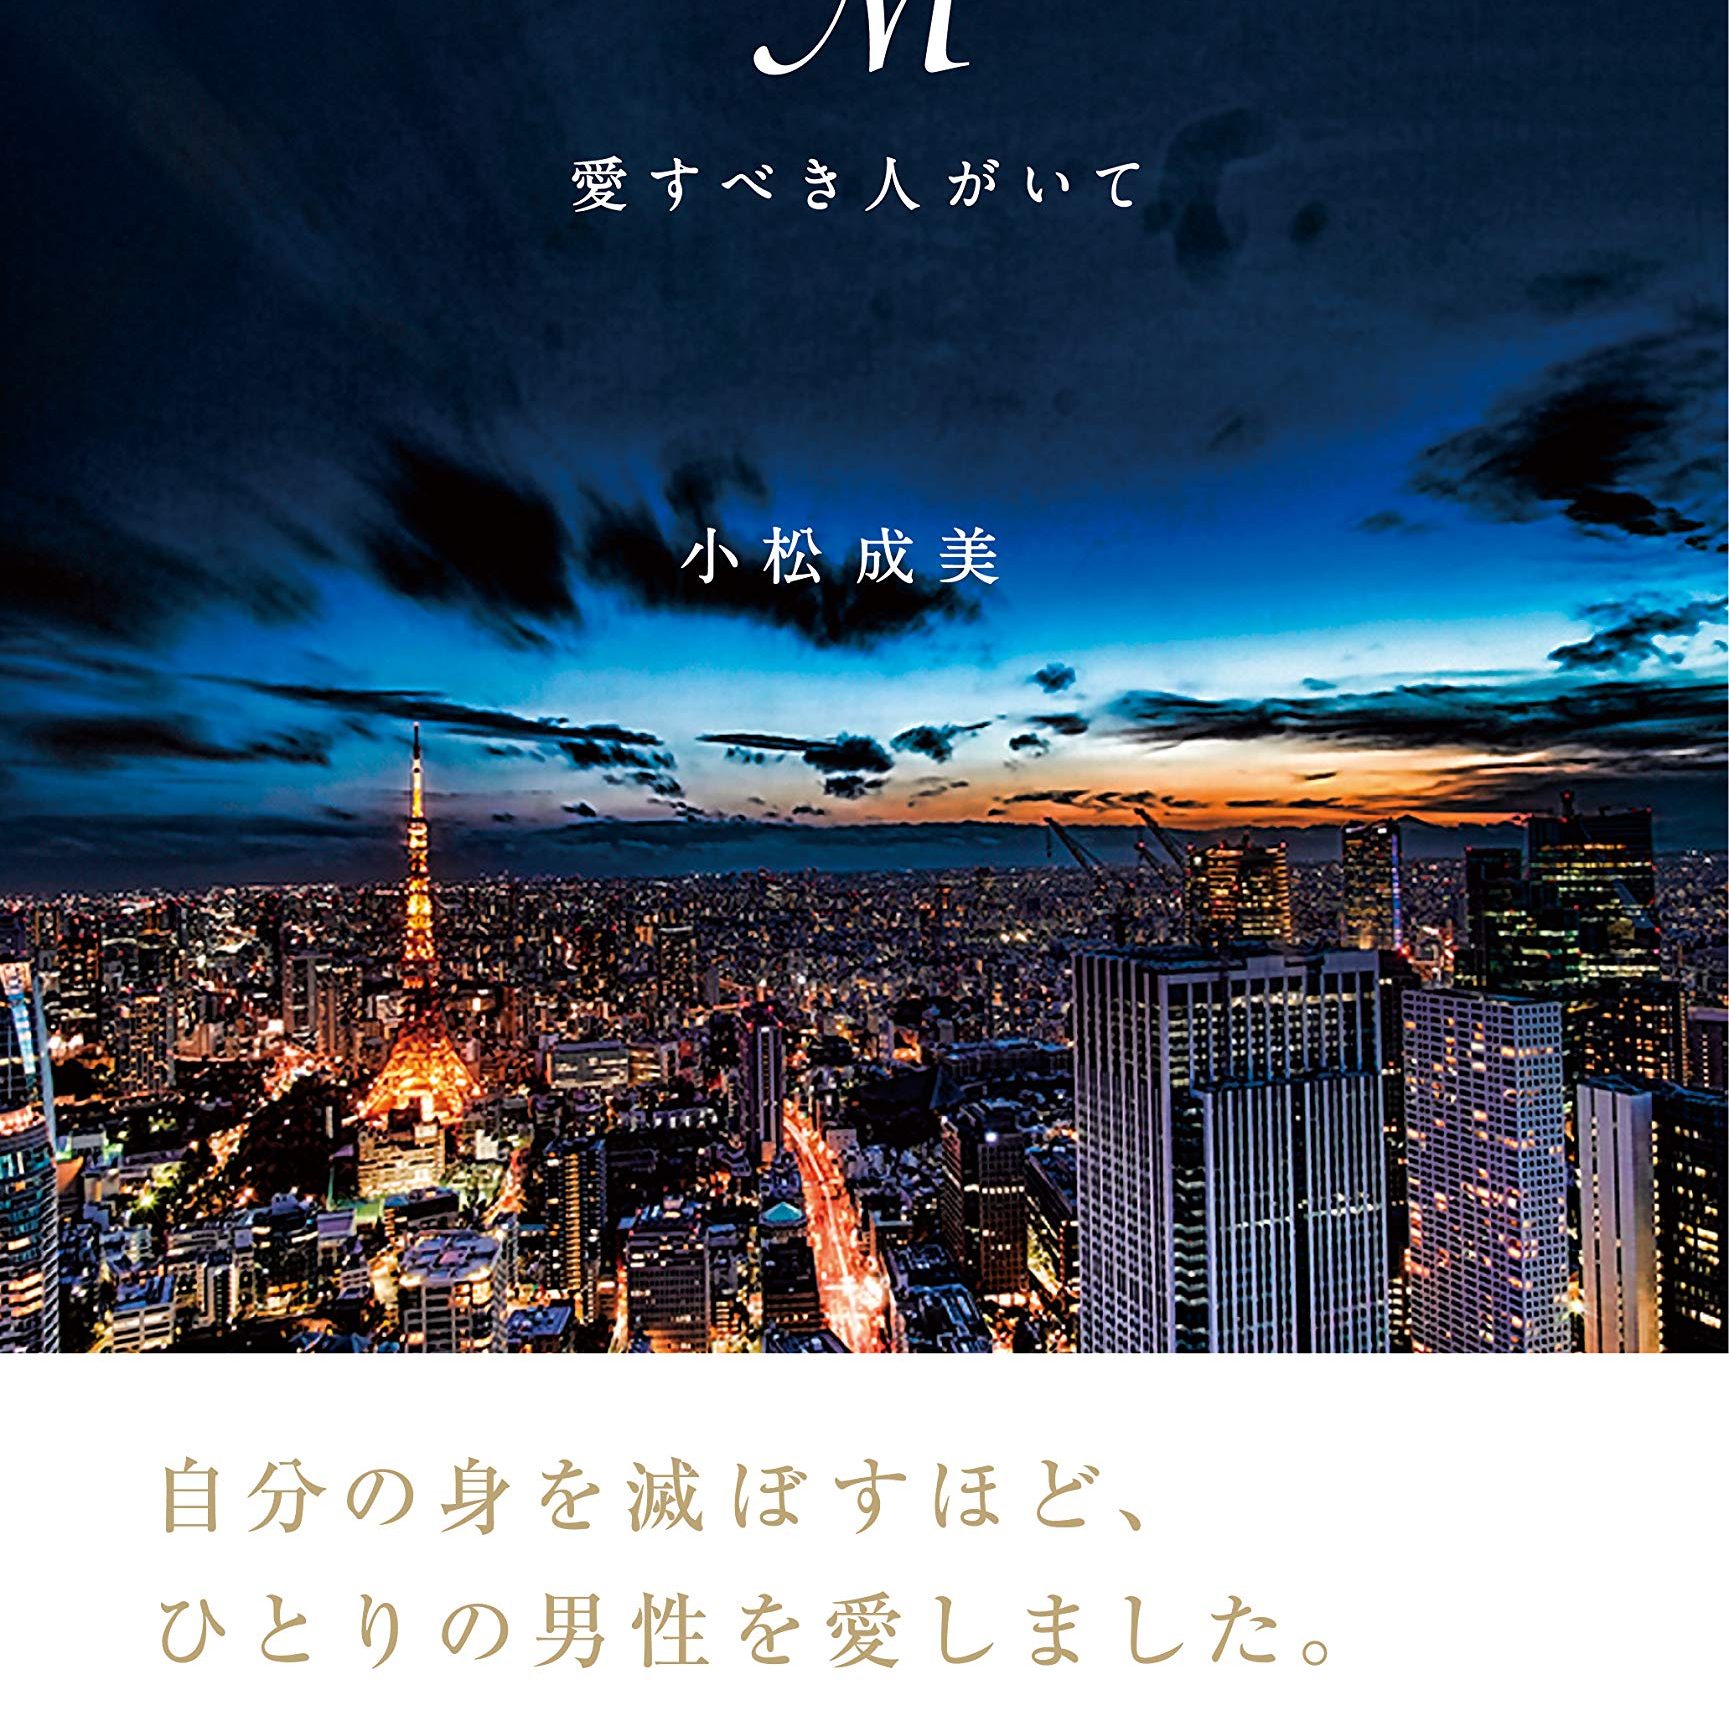 浜崎あゆみの自伝的小説 M 愛すべき人がいて が描く 身を焦がすよう